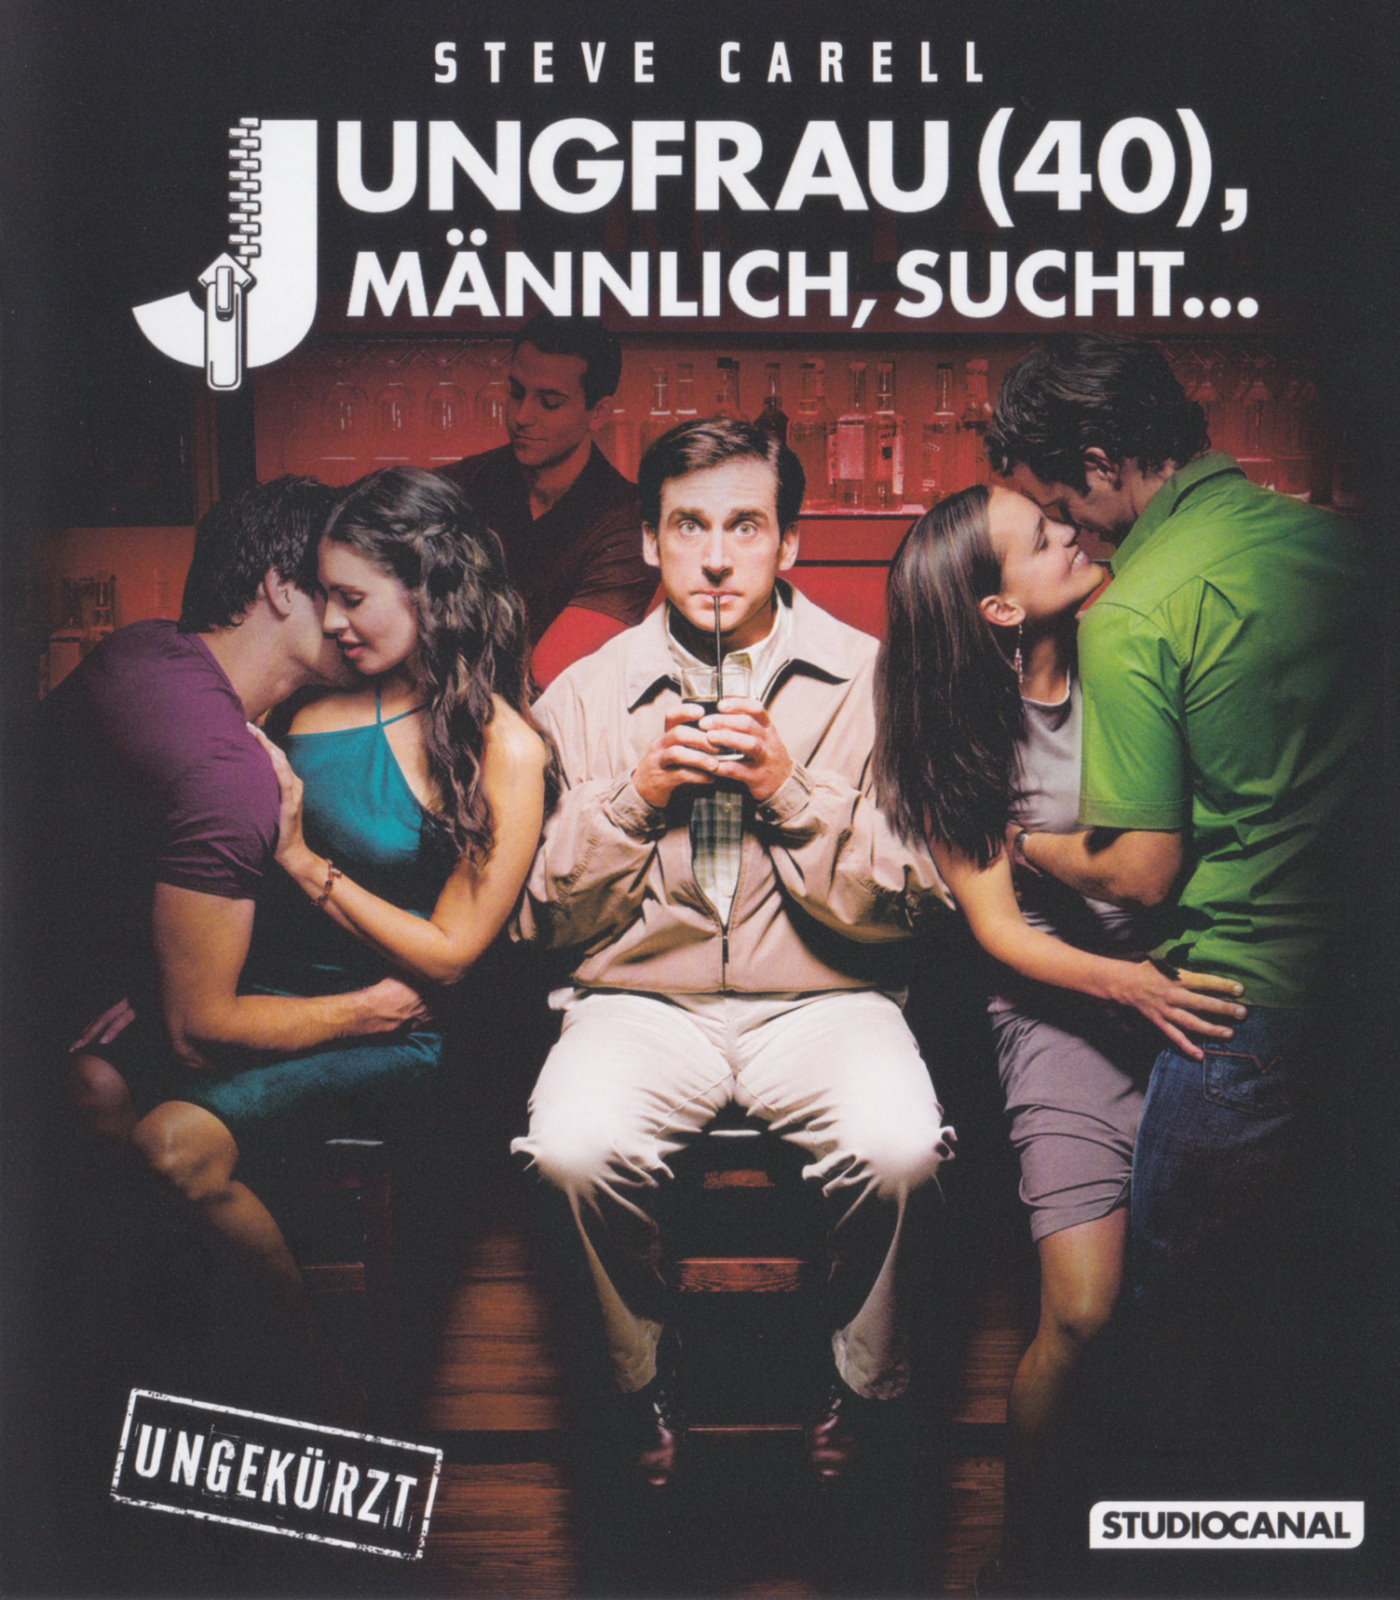 Cover - Jungfrau (40), männlich, sucht….jpg